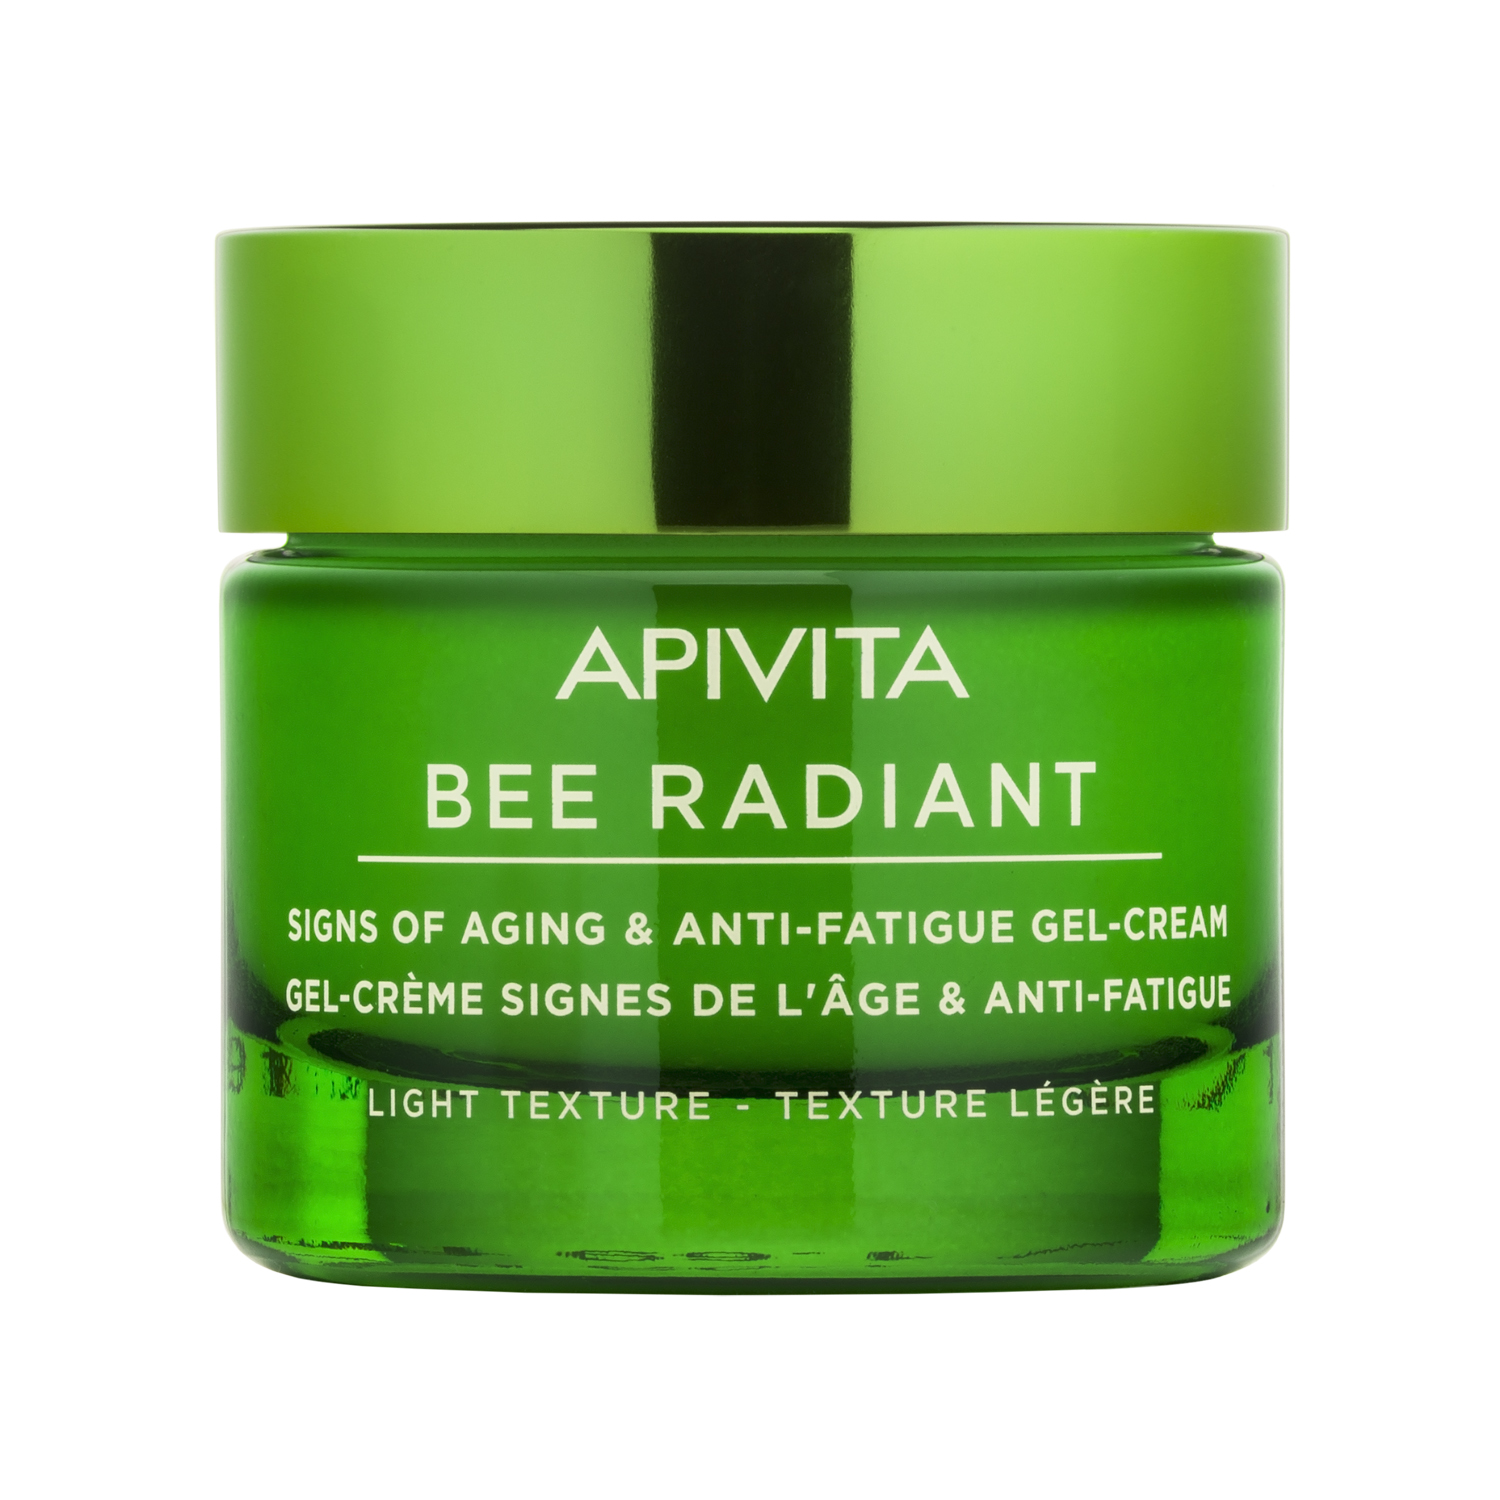 Apivita Гель-крем с легкой текстурой, 50 мл (Apivita, Bee Radiant) apivita комплексный уход с легкой текстурой 50 мл apivita queen bee